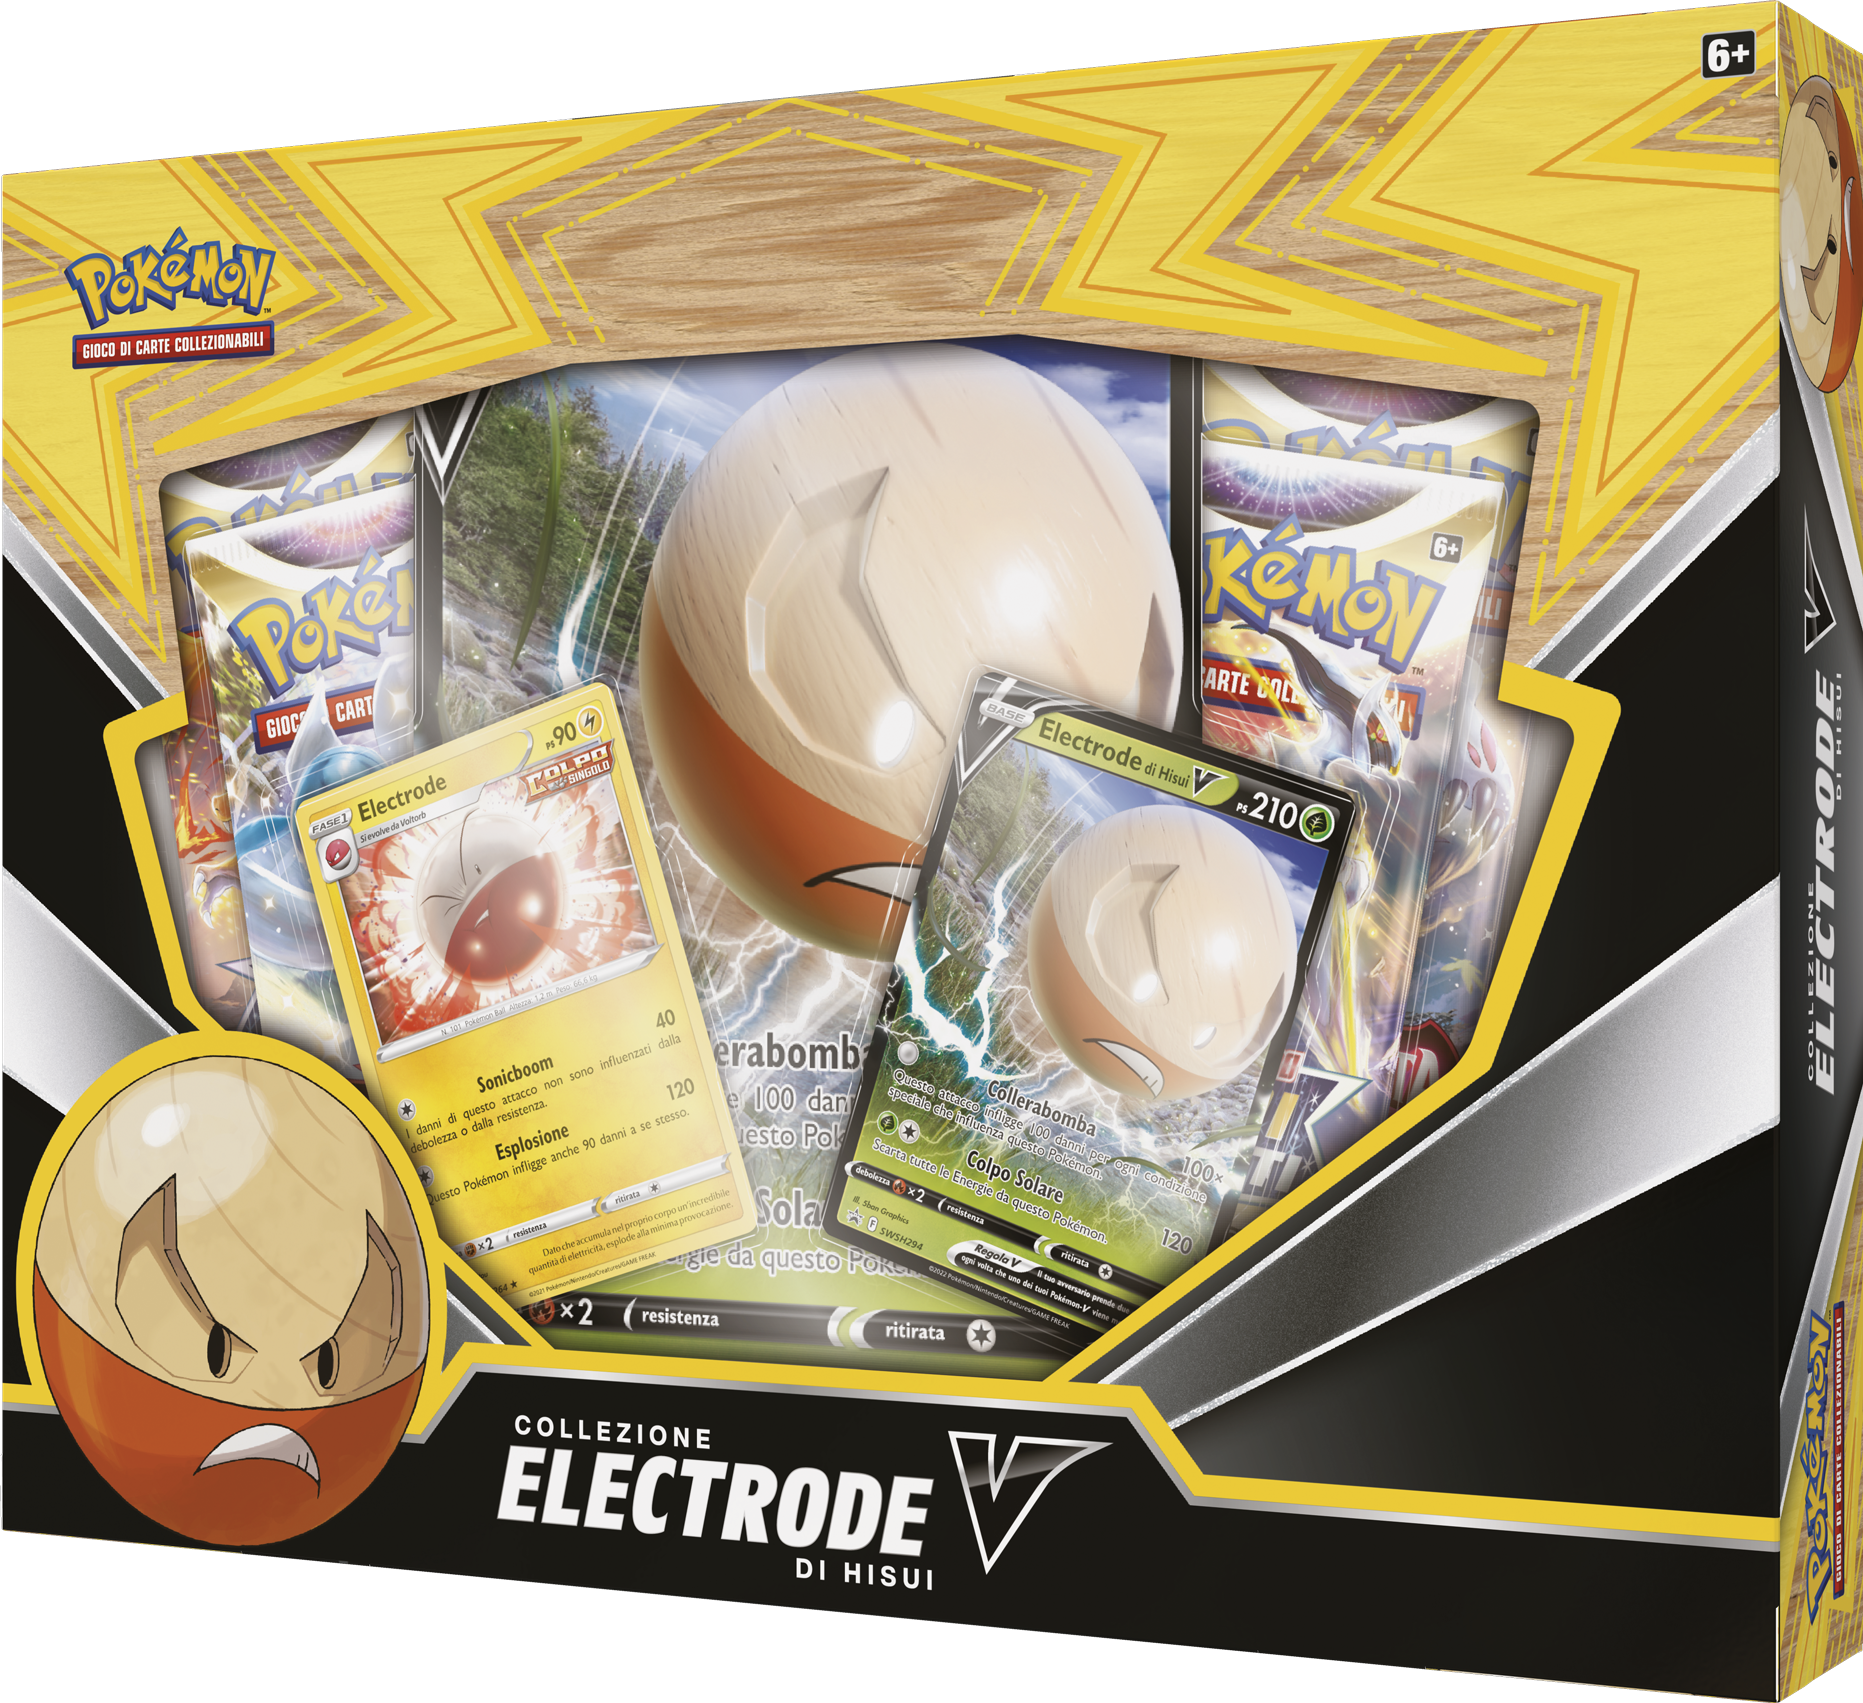 Pokemon collezione electrode di hisui-v - POKEMON